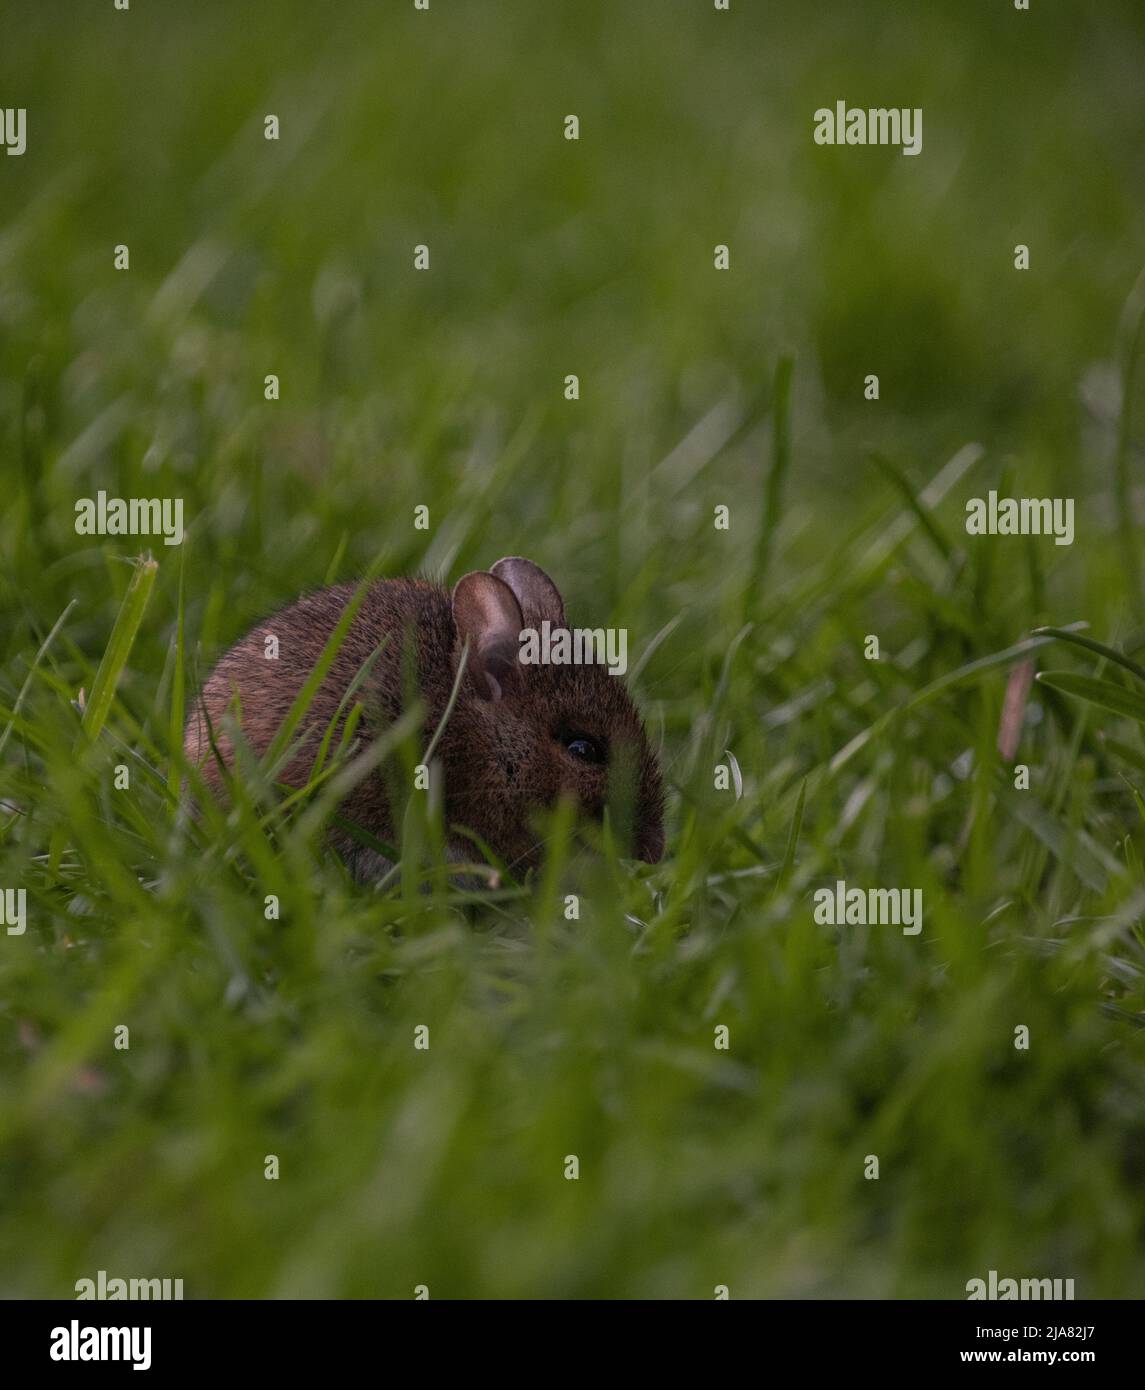 Souris à longue queue / à champ commun (apodemus sylvaticus), se cachant parmi les lames de l'herbe. Banque D'Images